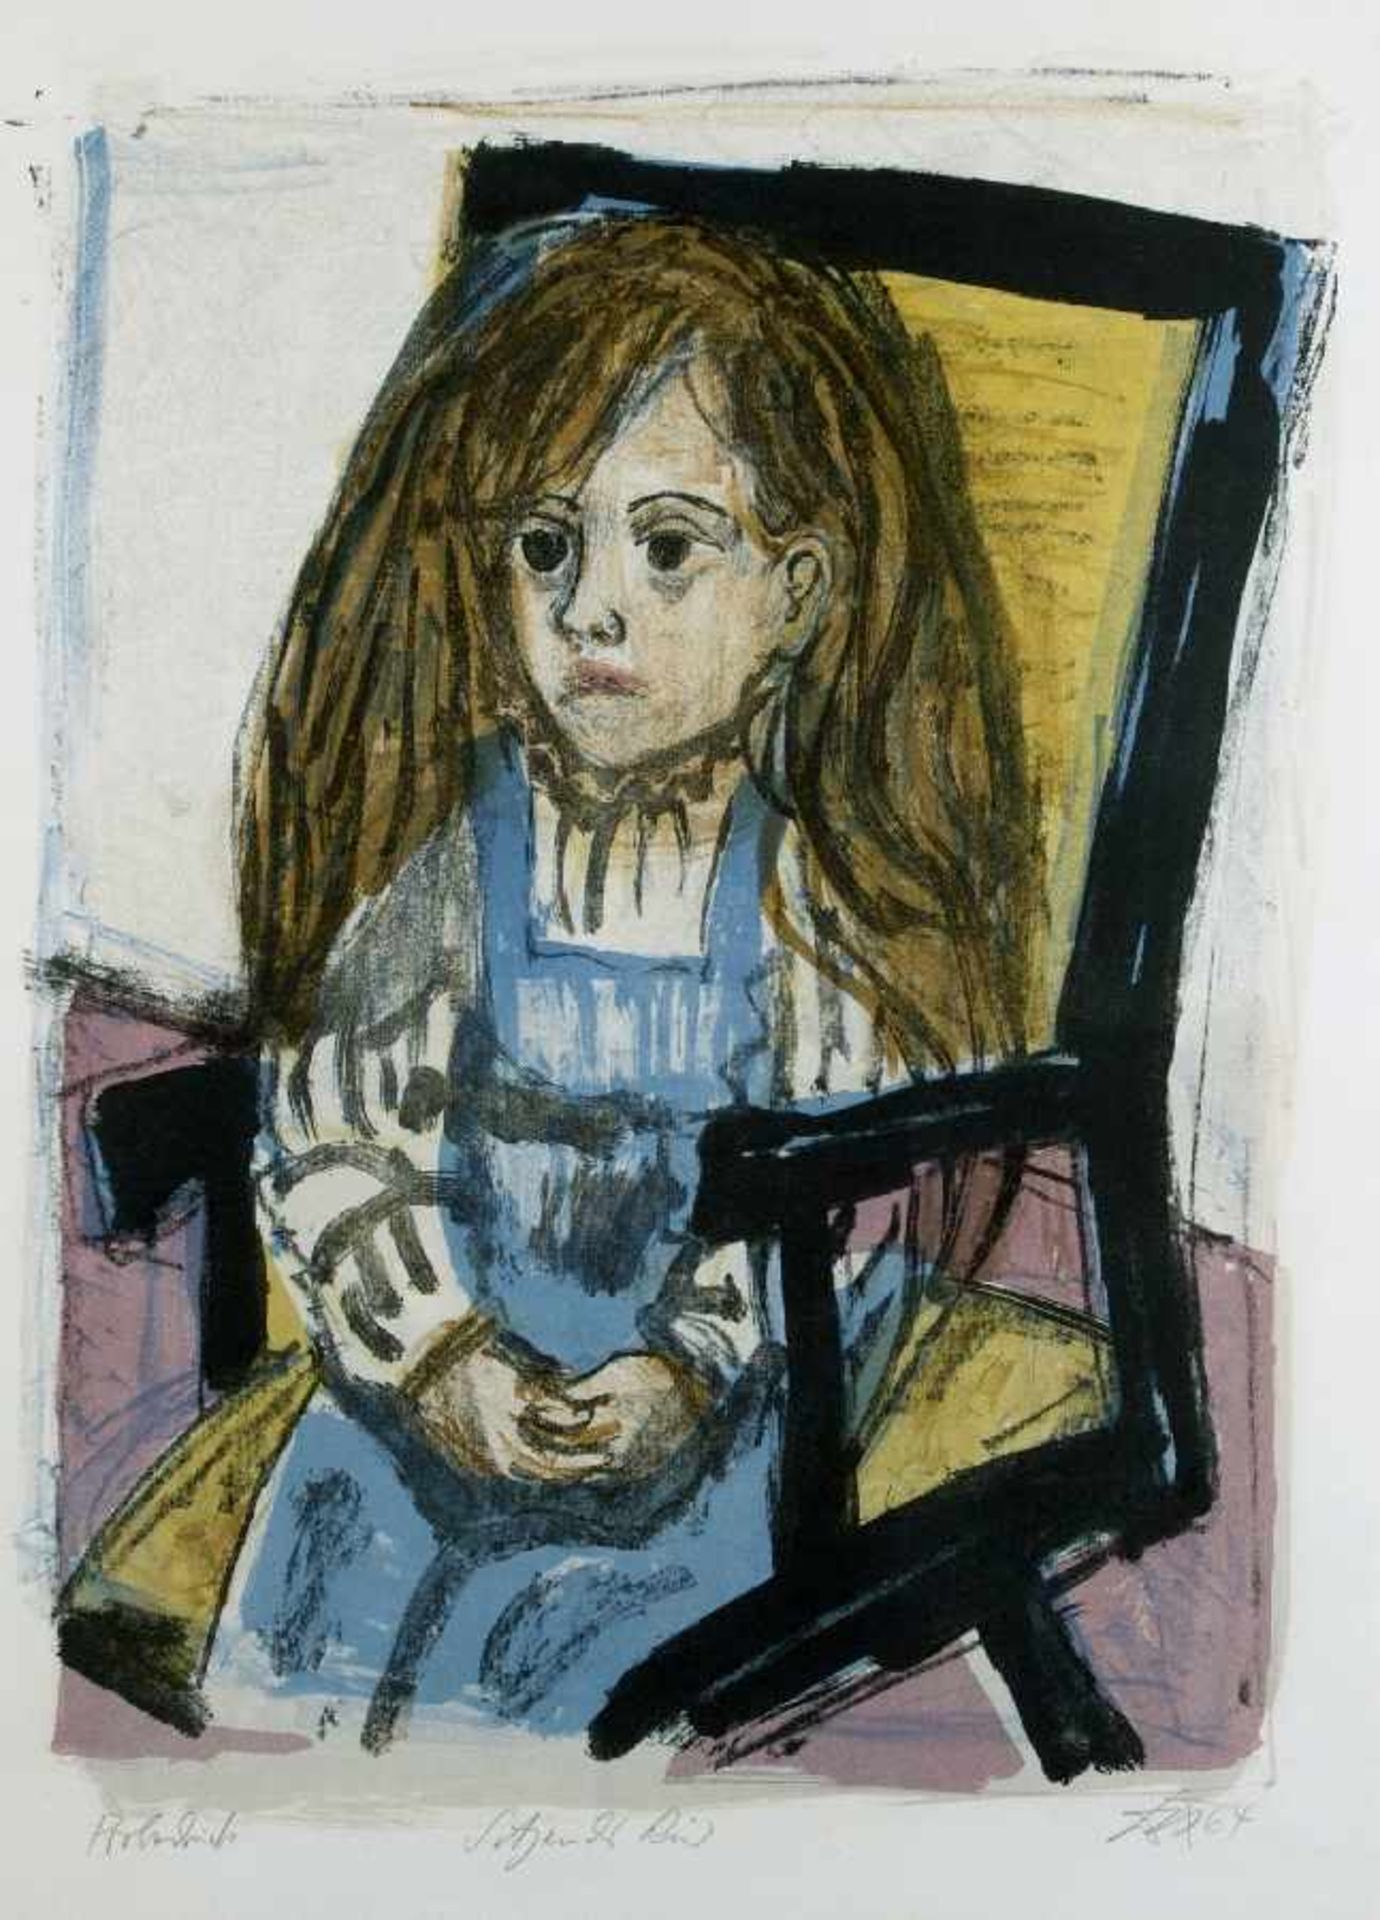 Otto Dix1891 Gera - 1969 SingenSitzendes Kind (Im Stuhl)Farblithografie auf Papier; H 600 mm, B